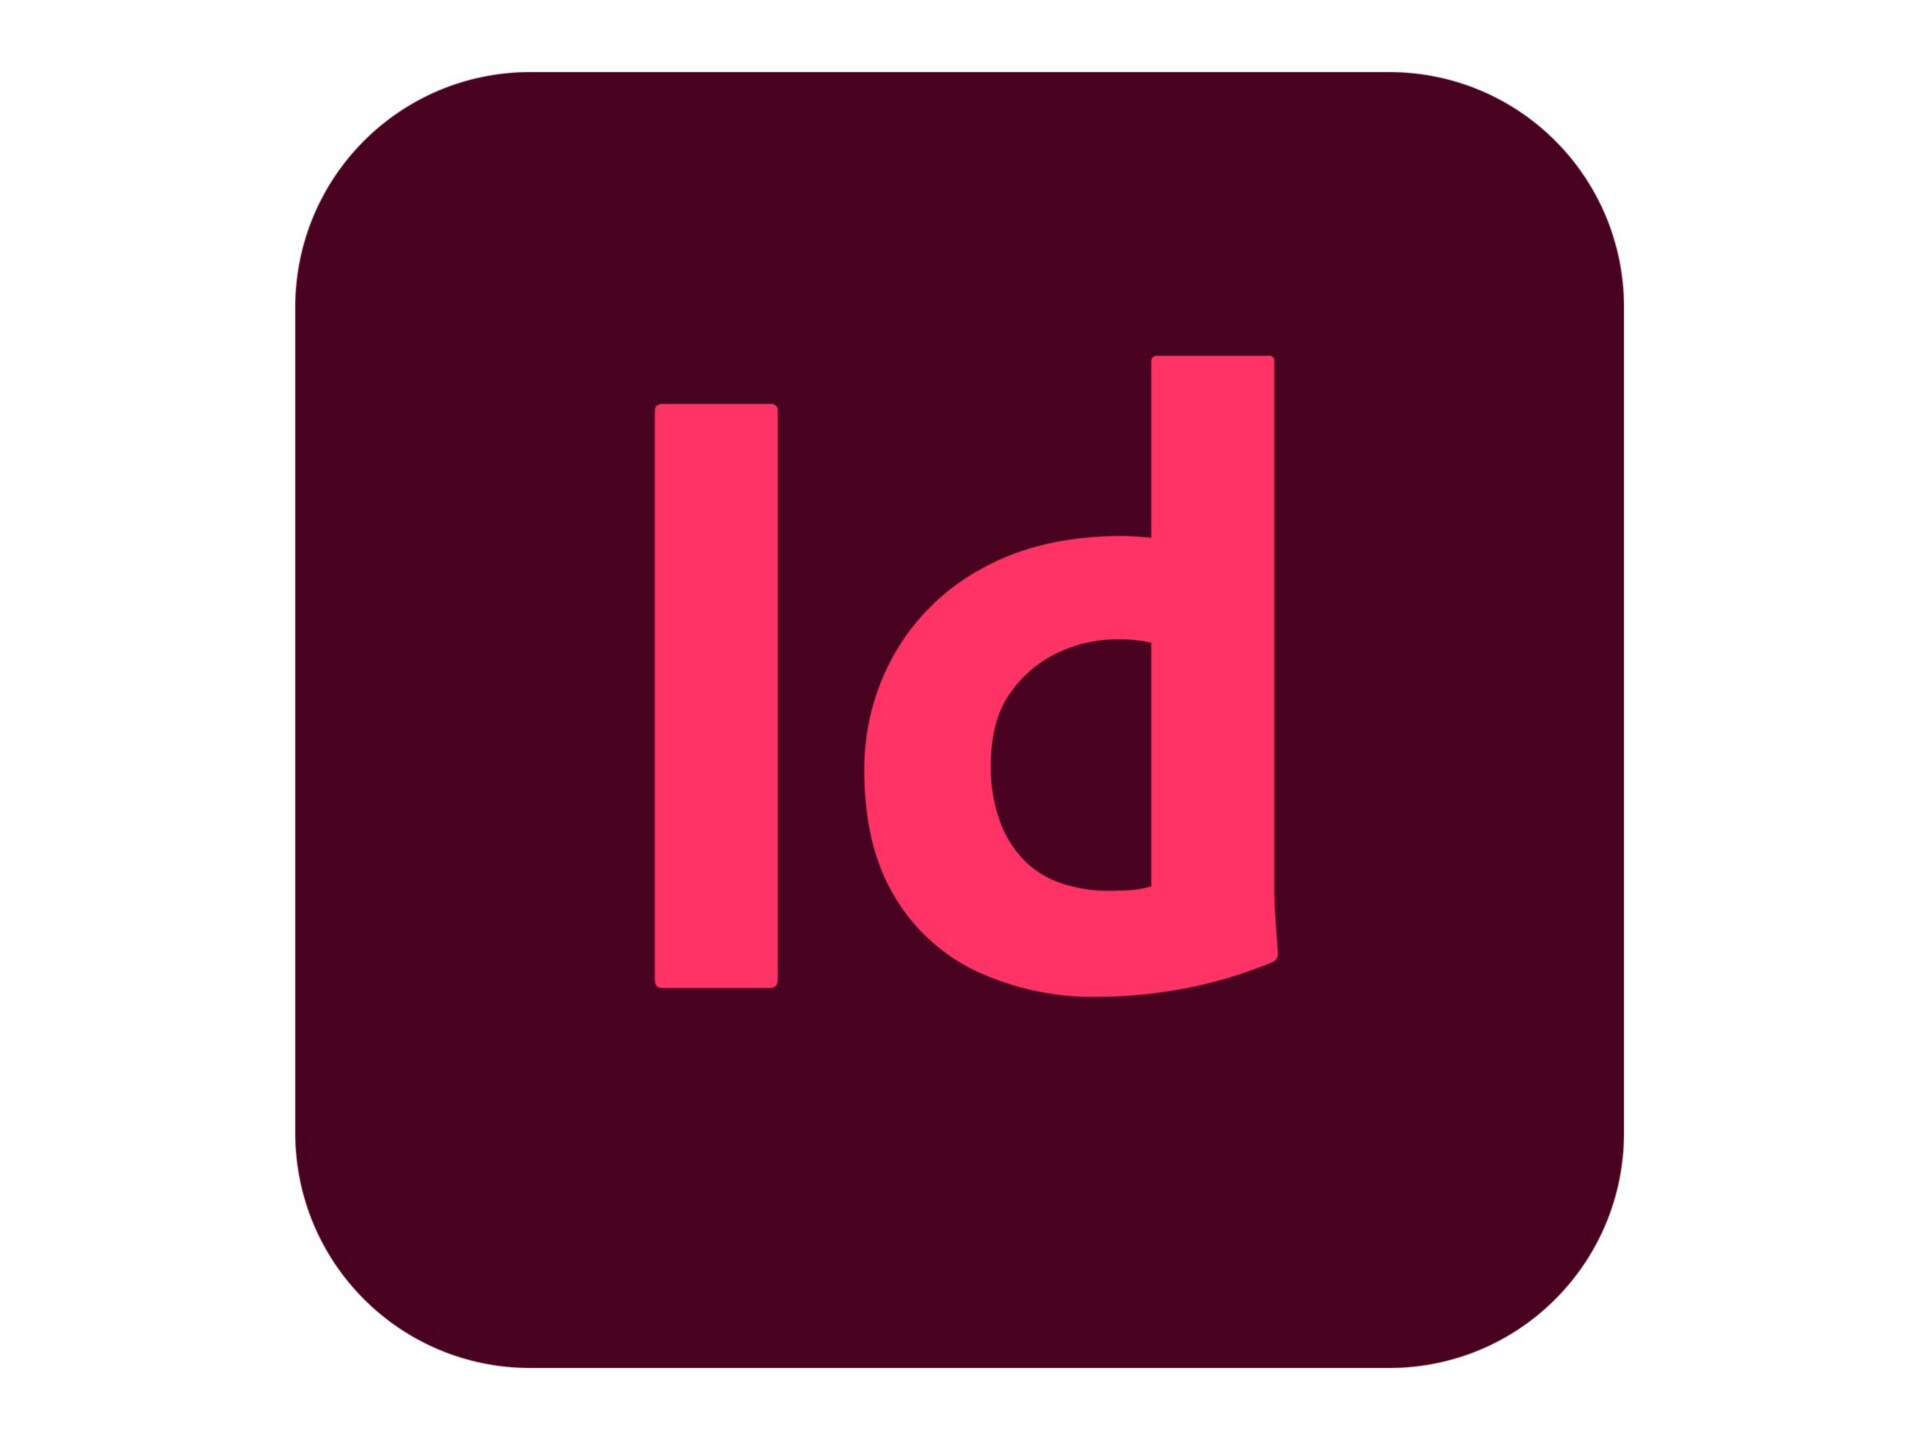 Adobe InDesign CC for Enterprise - Subscription New (44 months) - 1 named u